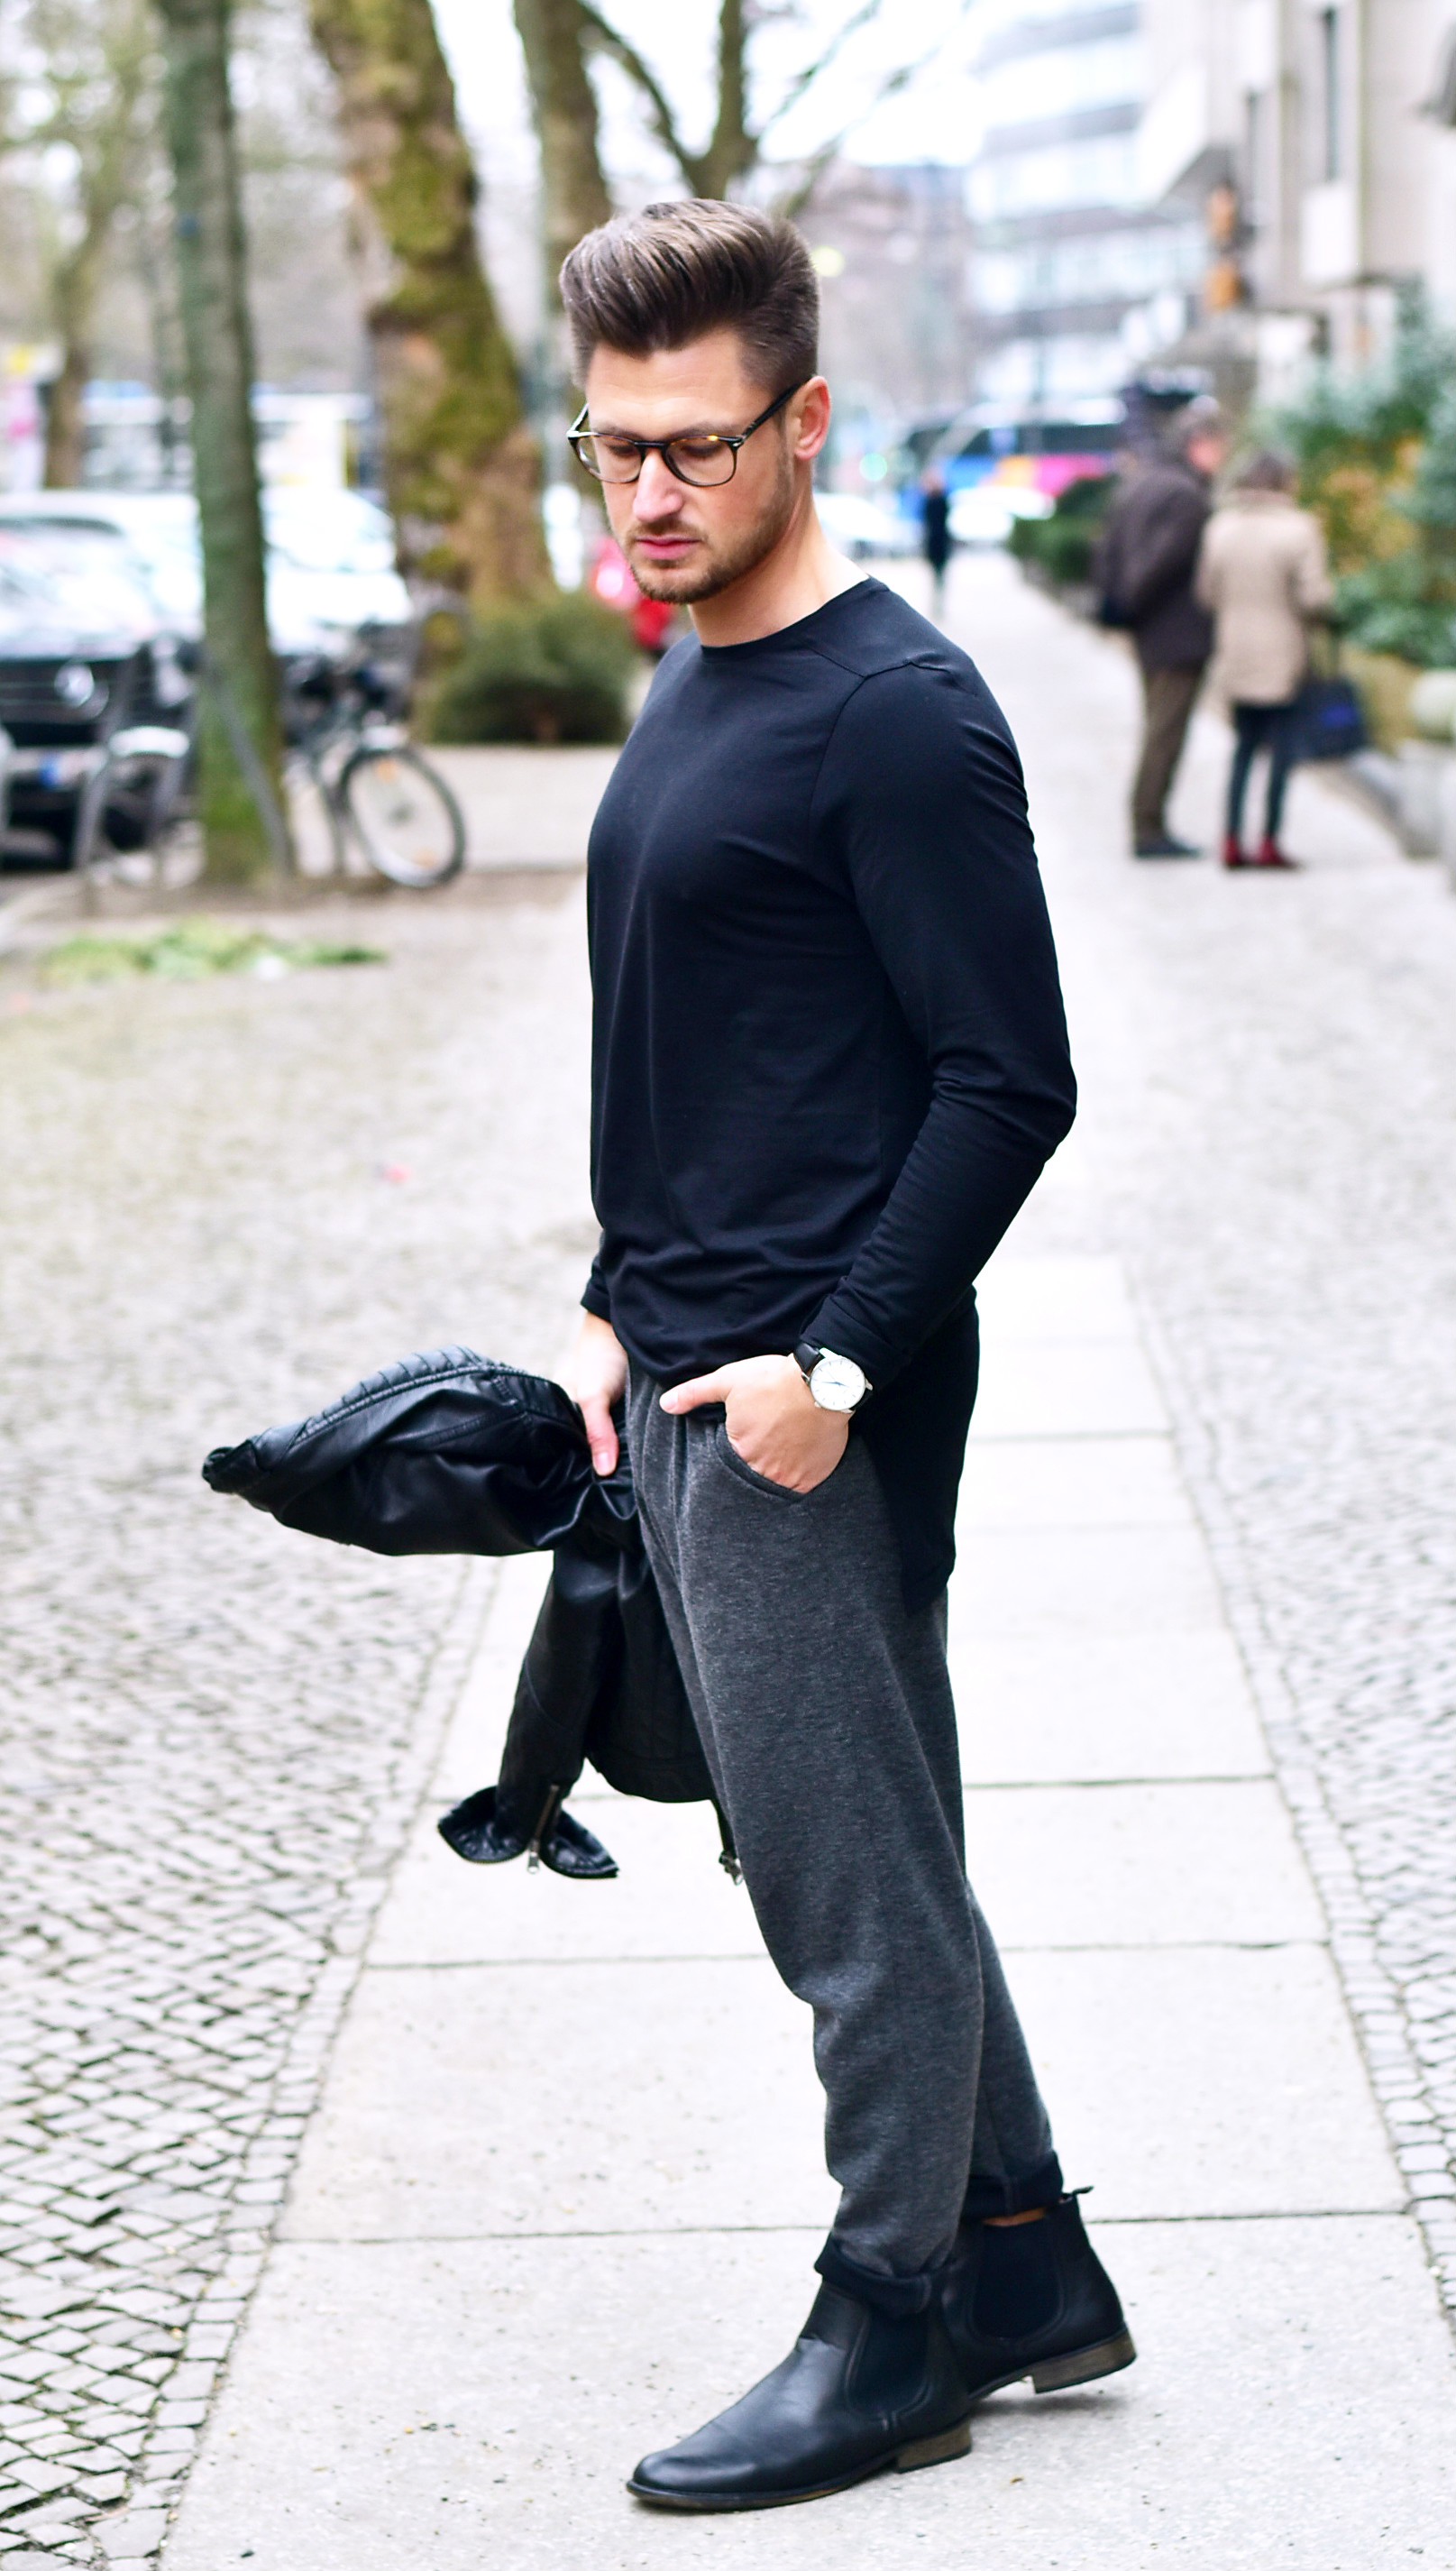 Tommeezjerry-Styleblog-Männerblog-Modeblog-Berlin-Jacke-Hose-Uhr-Boots-Outfit-Männermode-Streetwear